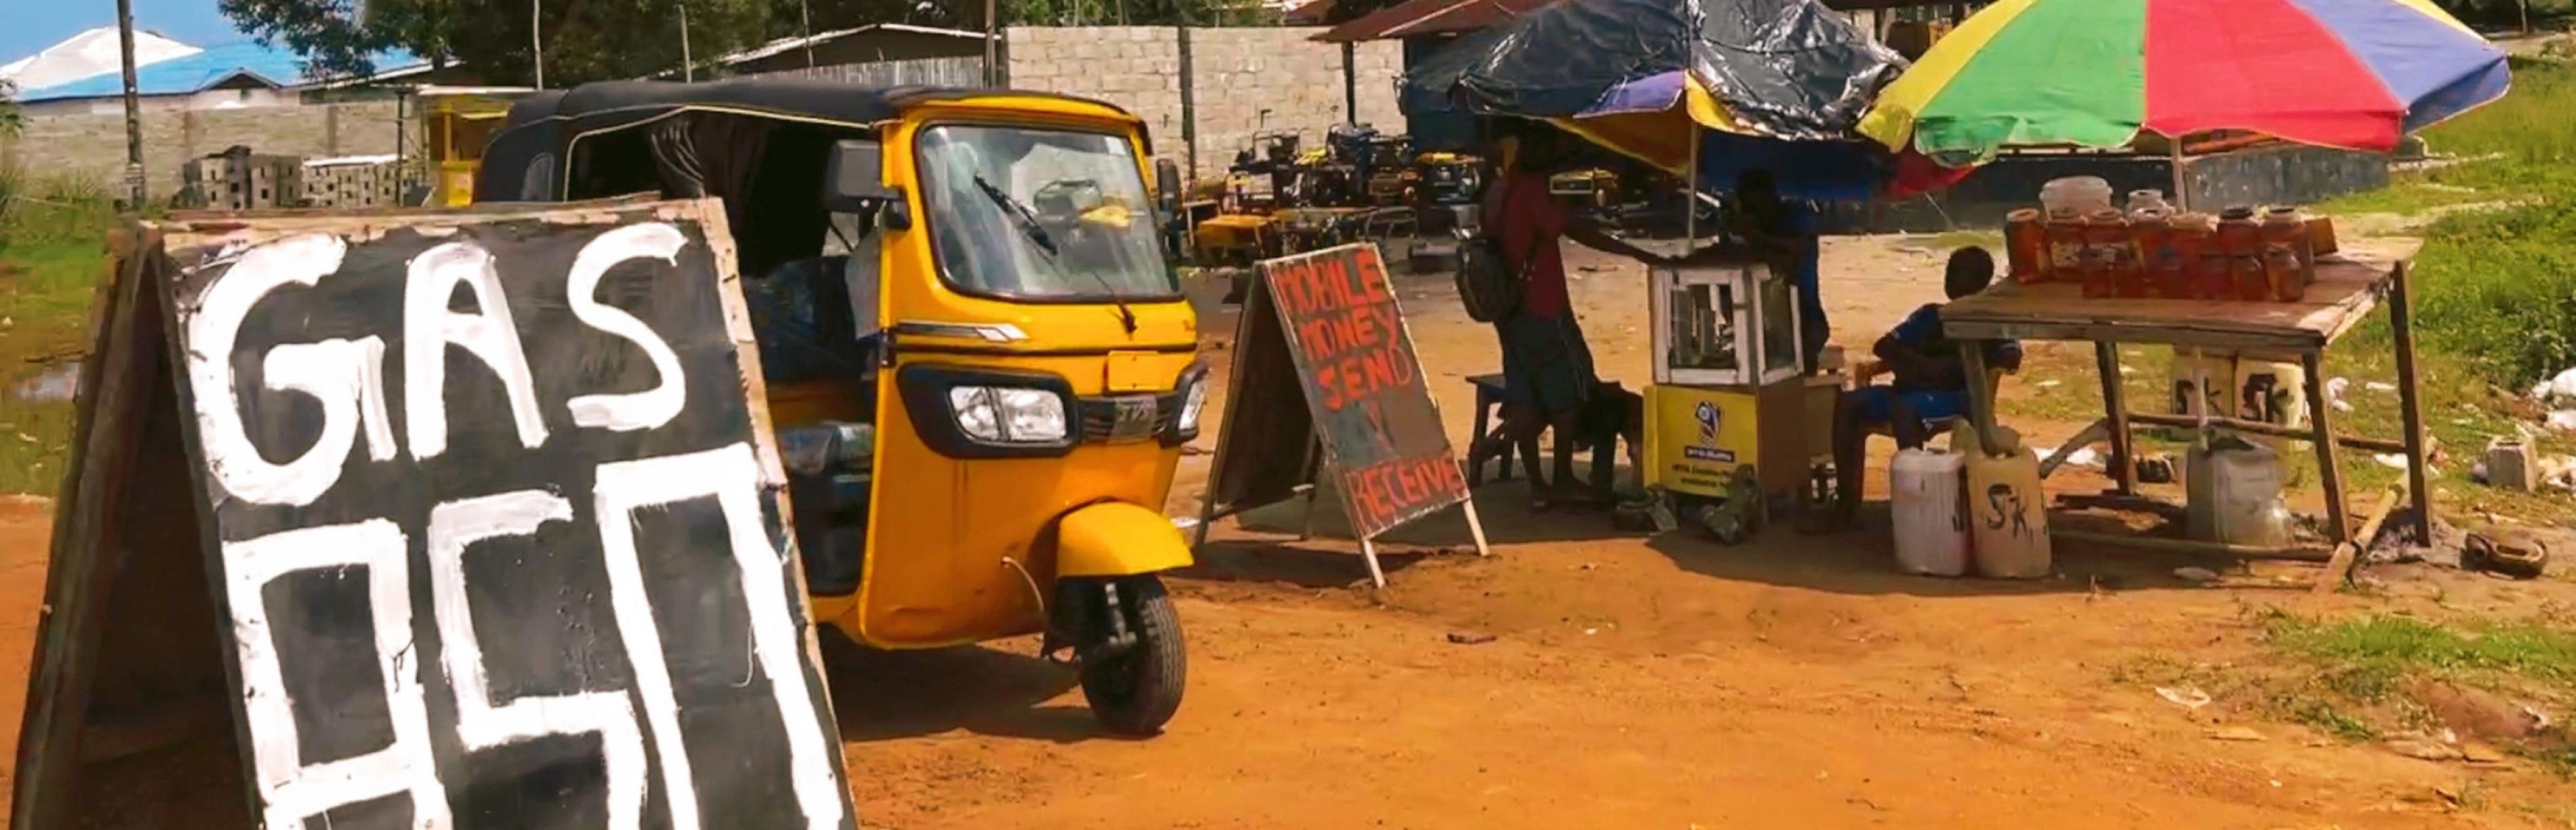 Ein mobiler Geldtransferdienst am Straßenrand in Liberia, Westafrika, für Menschen ohne Zugang zu Banken